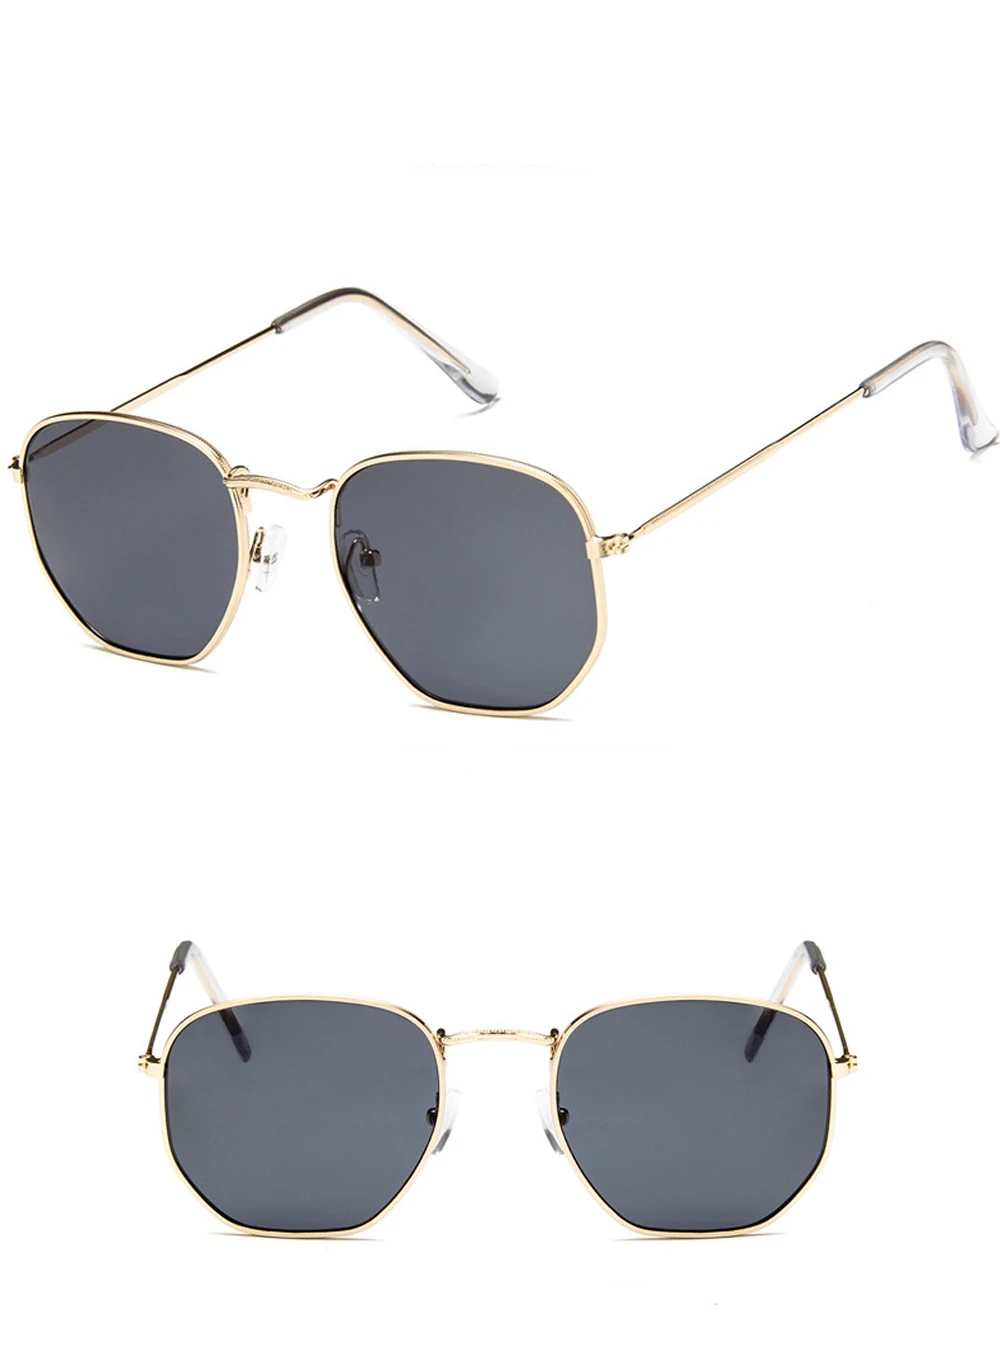 MuseLife 2019 солнцезащитные очки с многоугольной оправой Для женщин очки леди люкс Ретро Металлические солнцезащитные очки винтажное зеркало